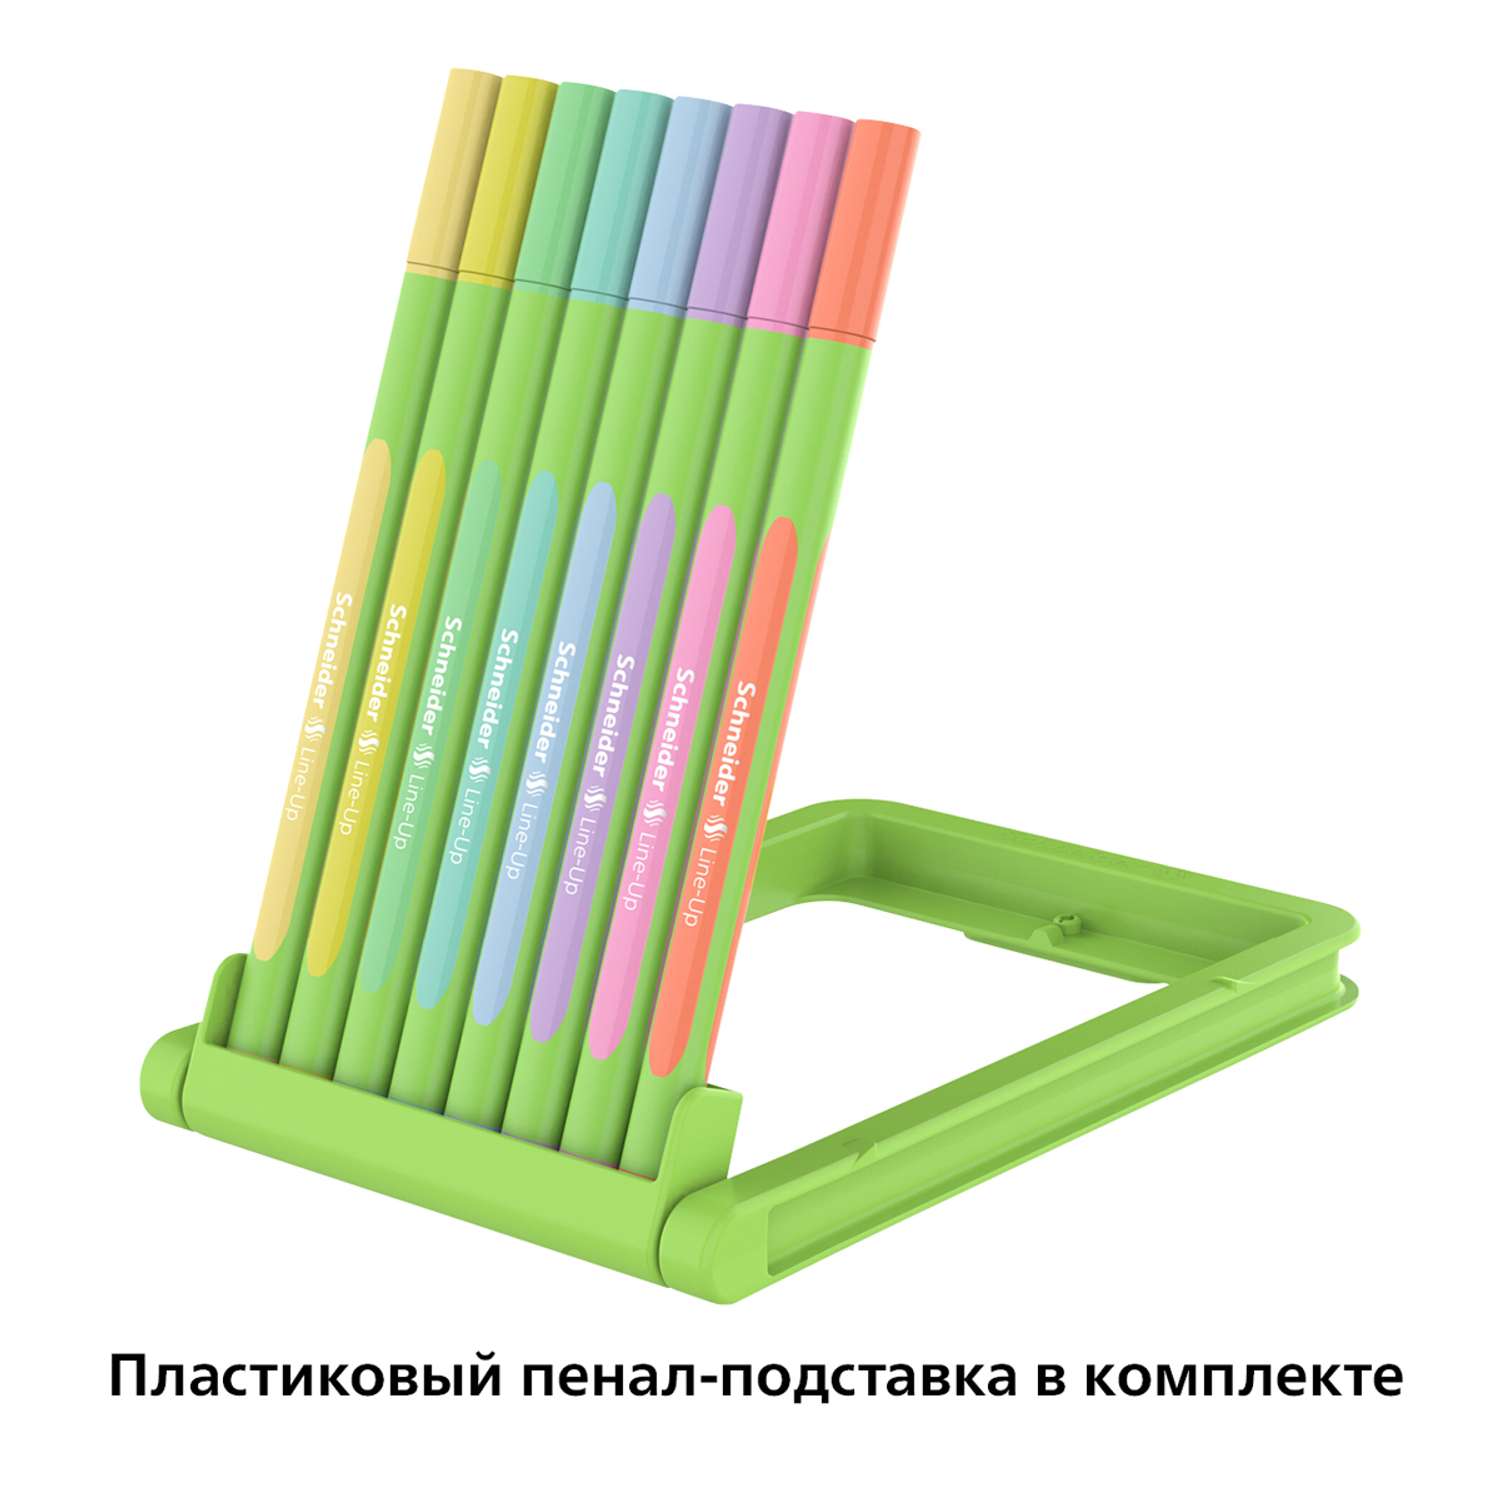 Набор капиллярных ручек SCHNEIDER Line-Up Pastel 8 цветов 0.4 мм пластиковый пенал-подставка европодвес - фото 6